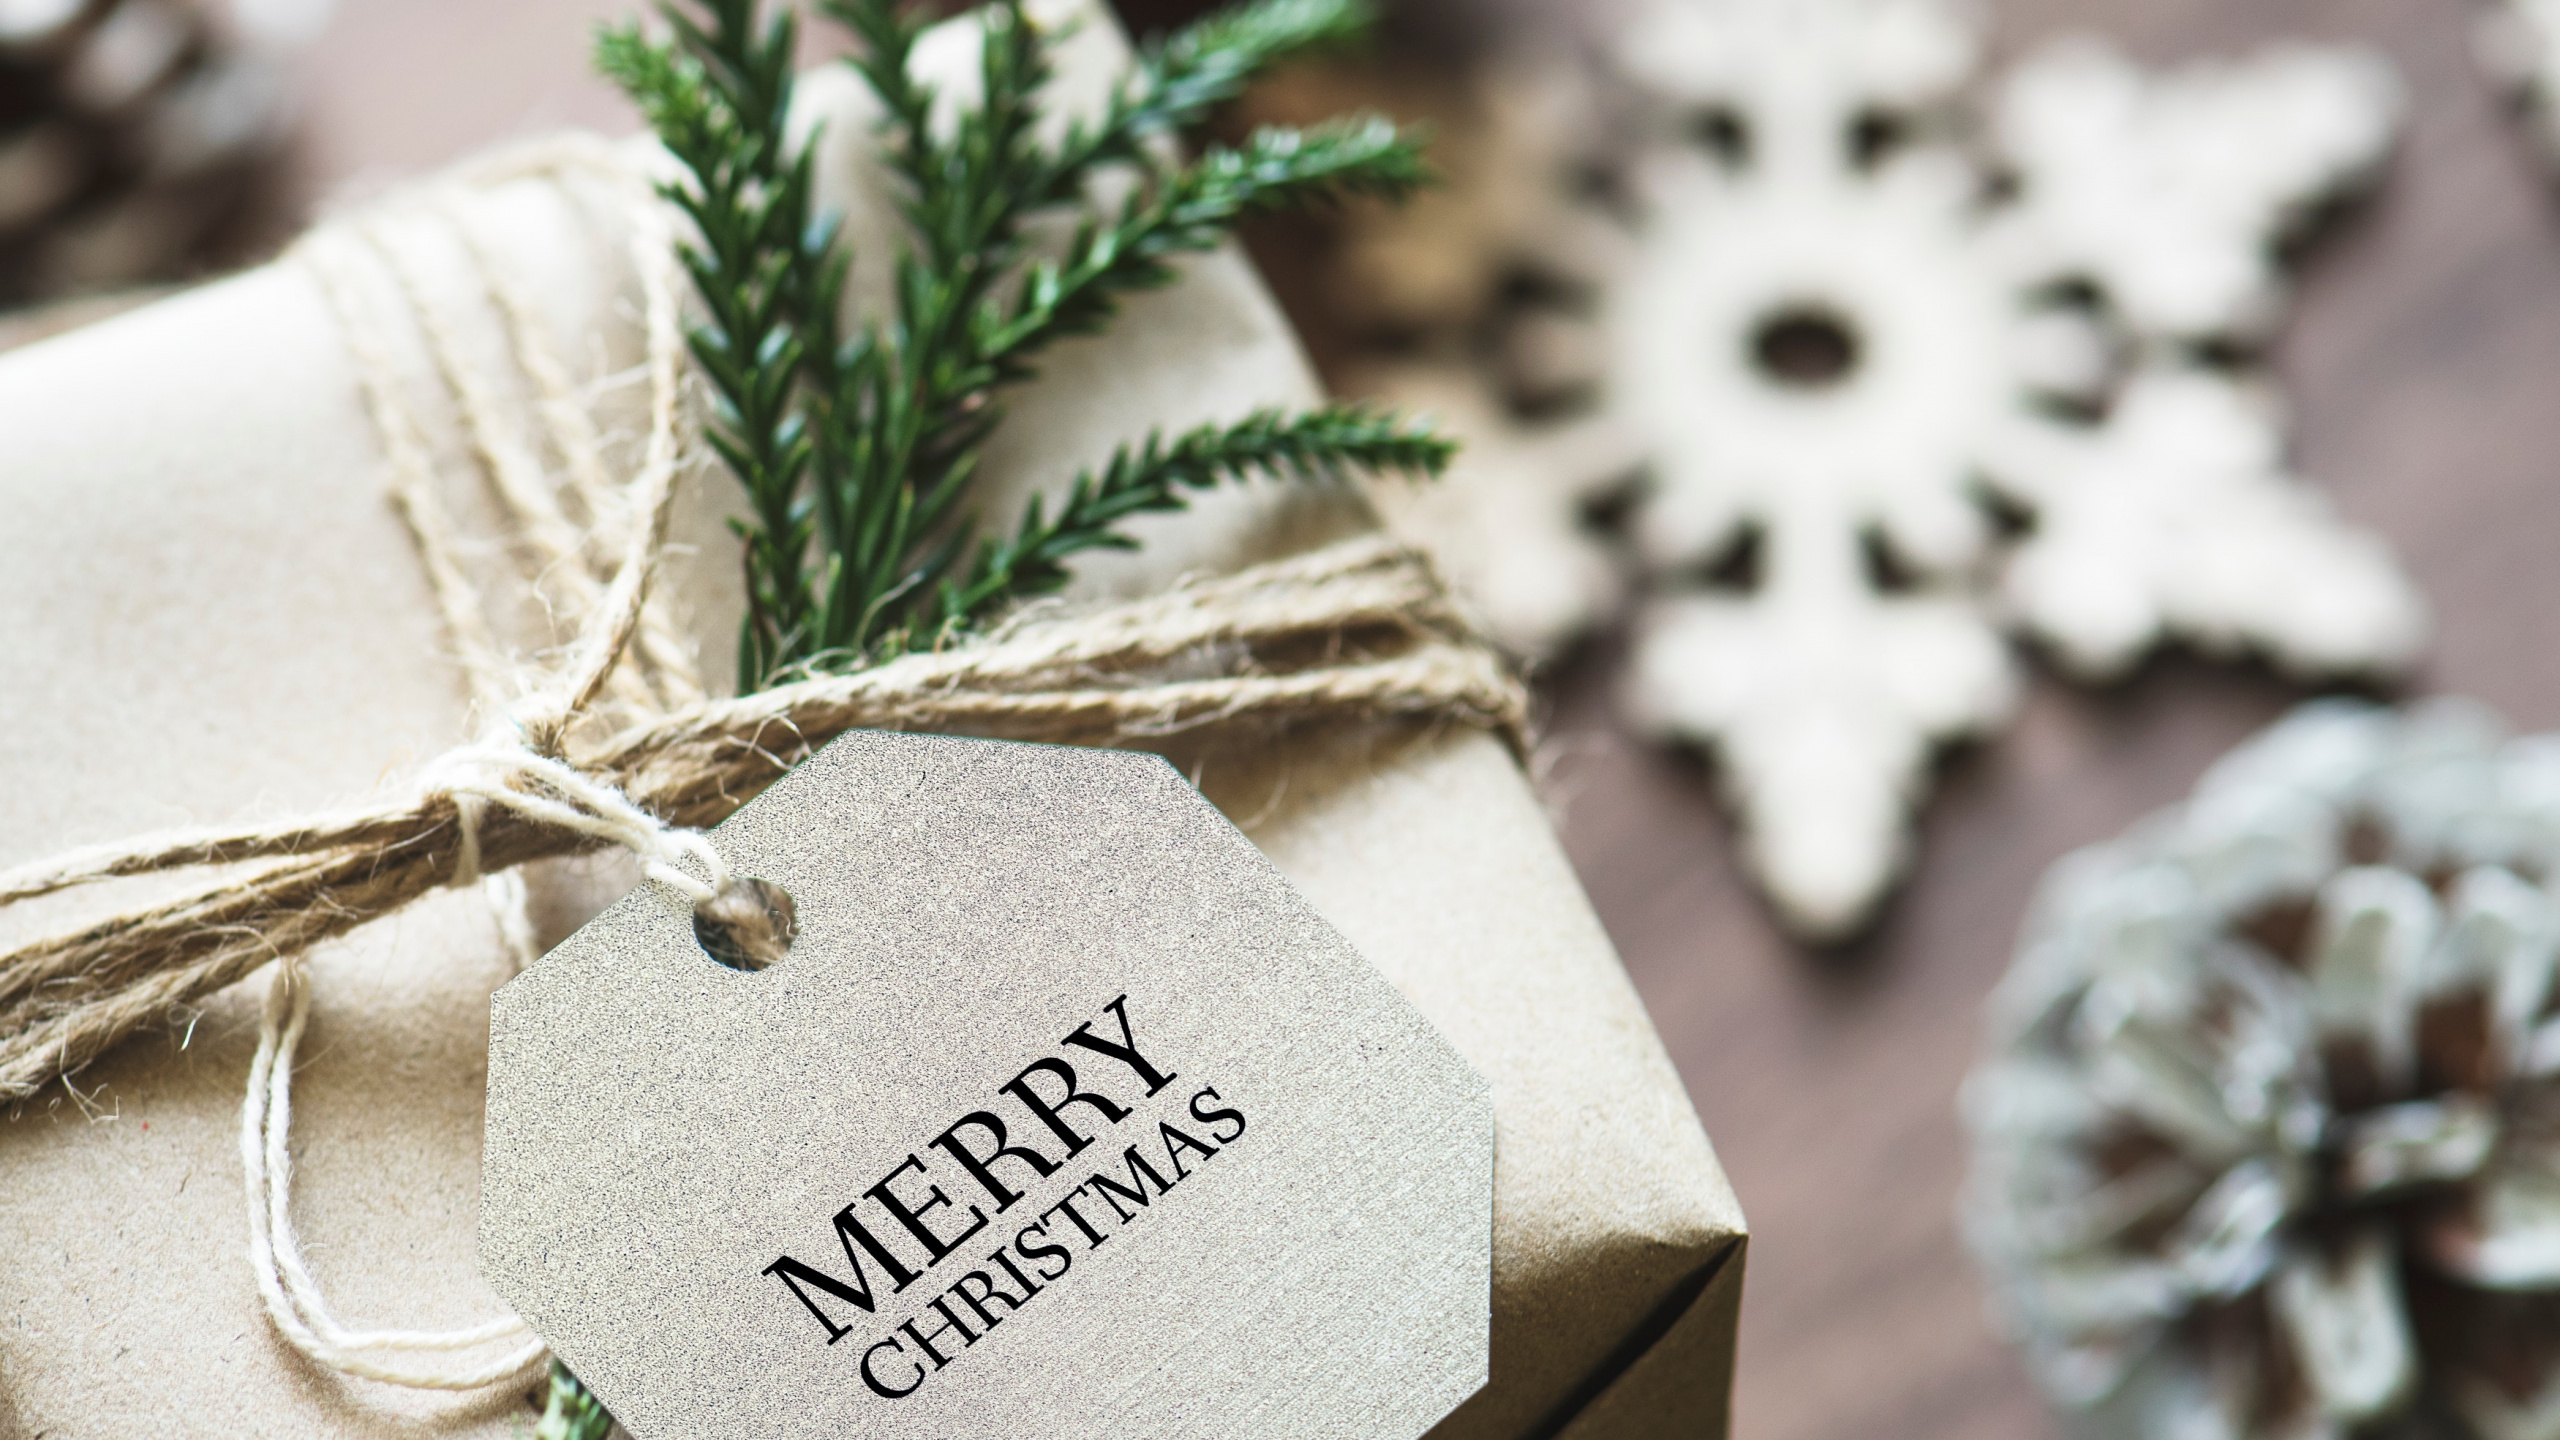 圣诞节那天, 圣诞节礼物, 礼物, 圣诞卡片, 礼品包装 壁纸 2560x1440 允许